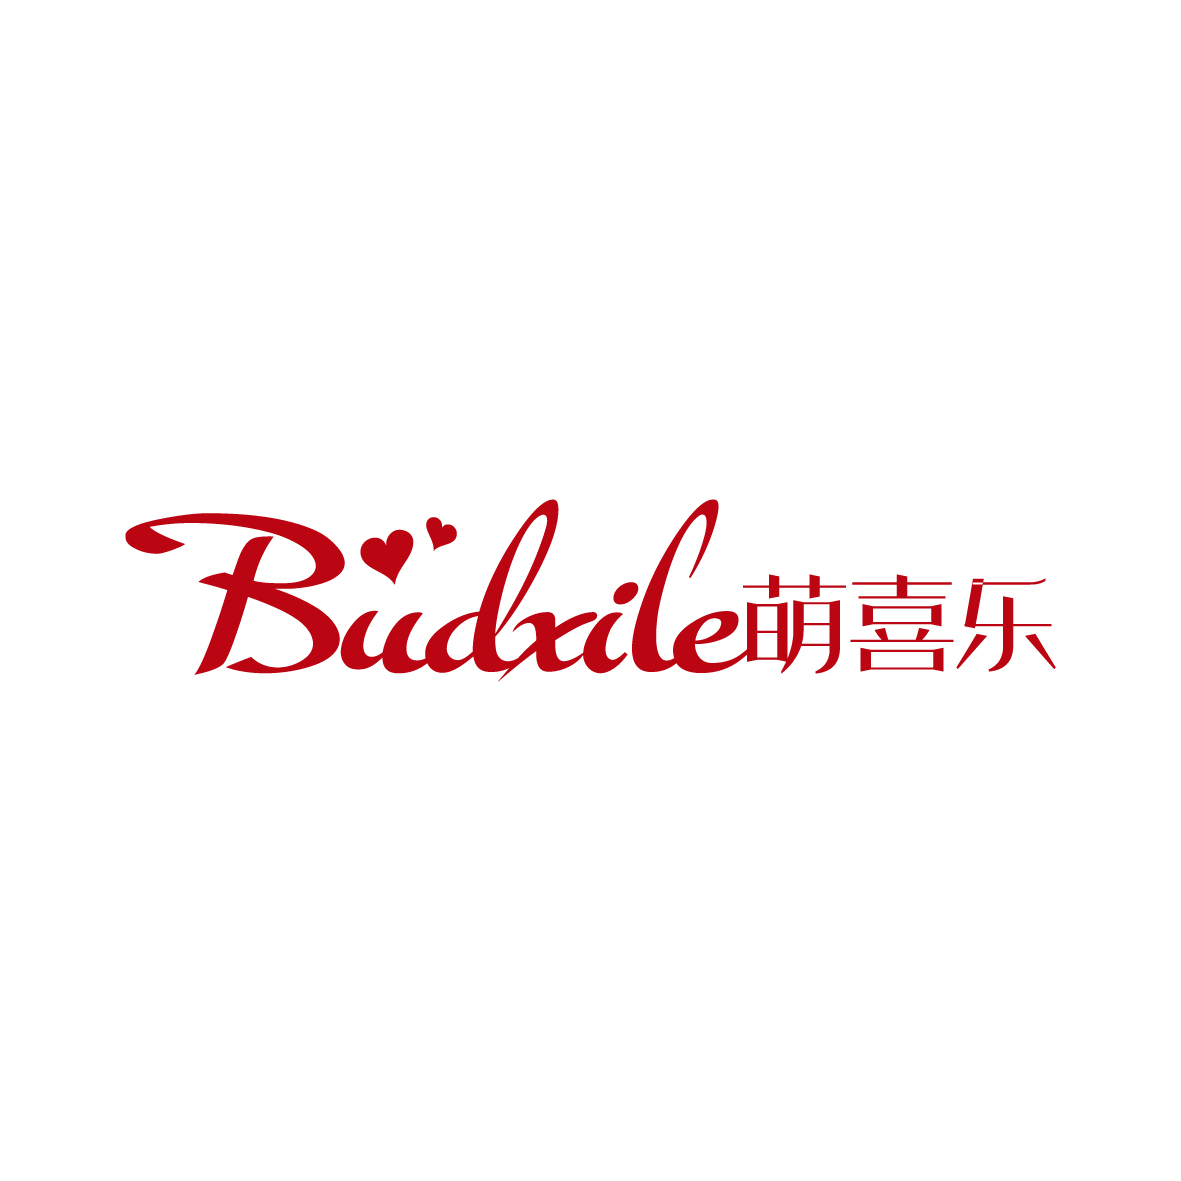 广州品翰文化发展有限公司商标萌喜乐 BUDXILE（31类）多少钱？